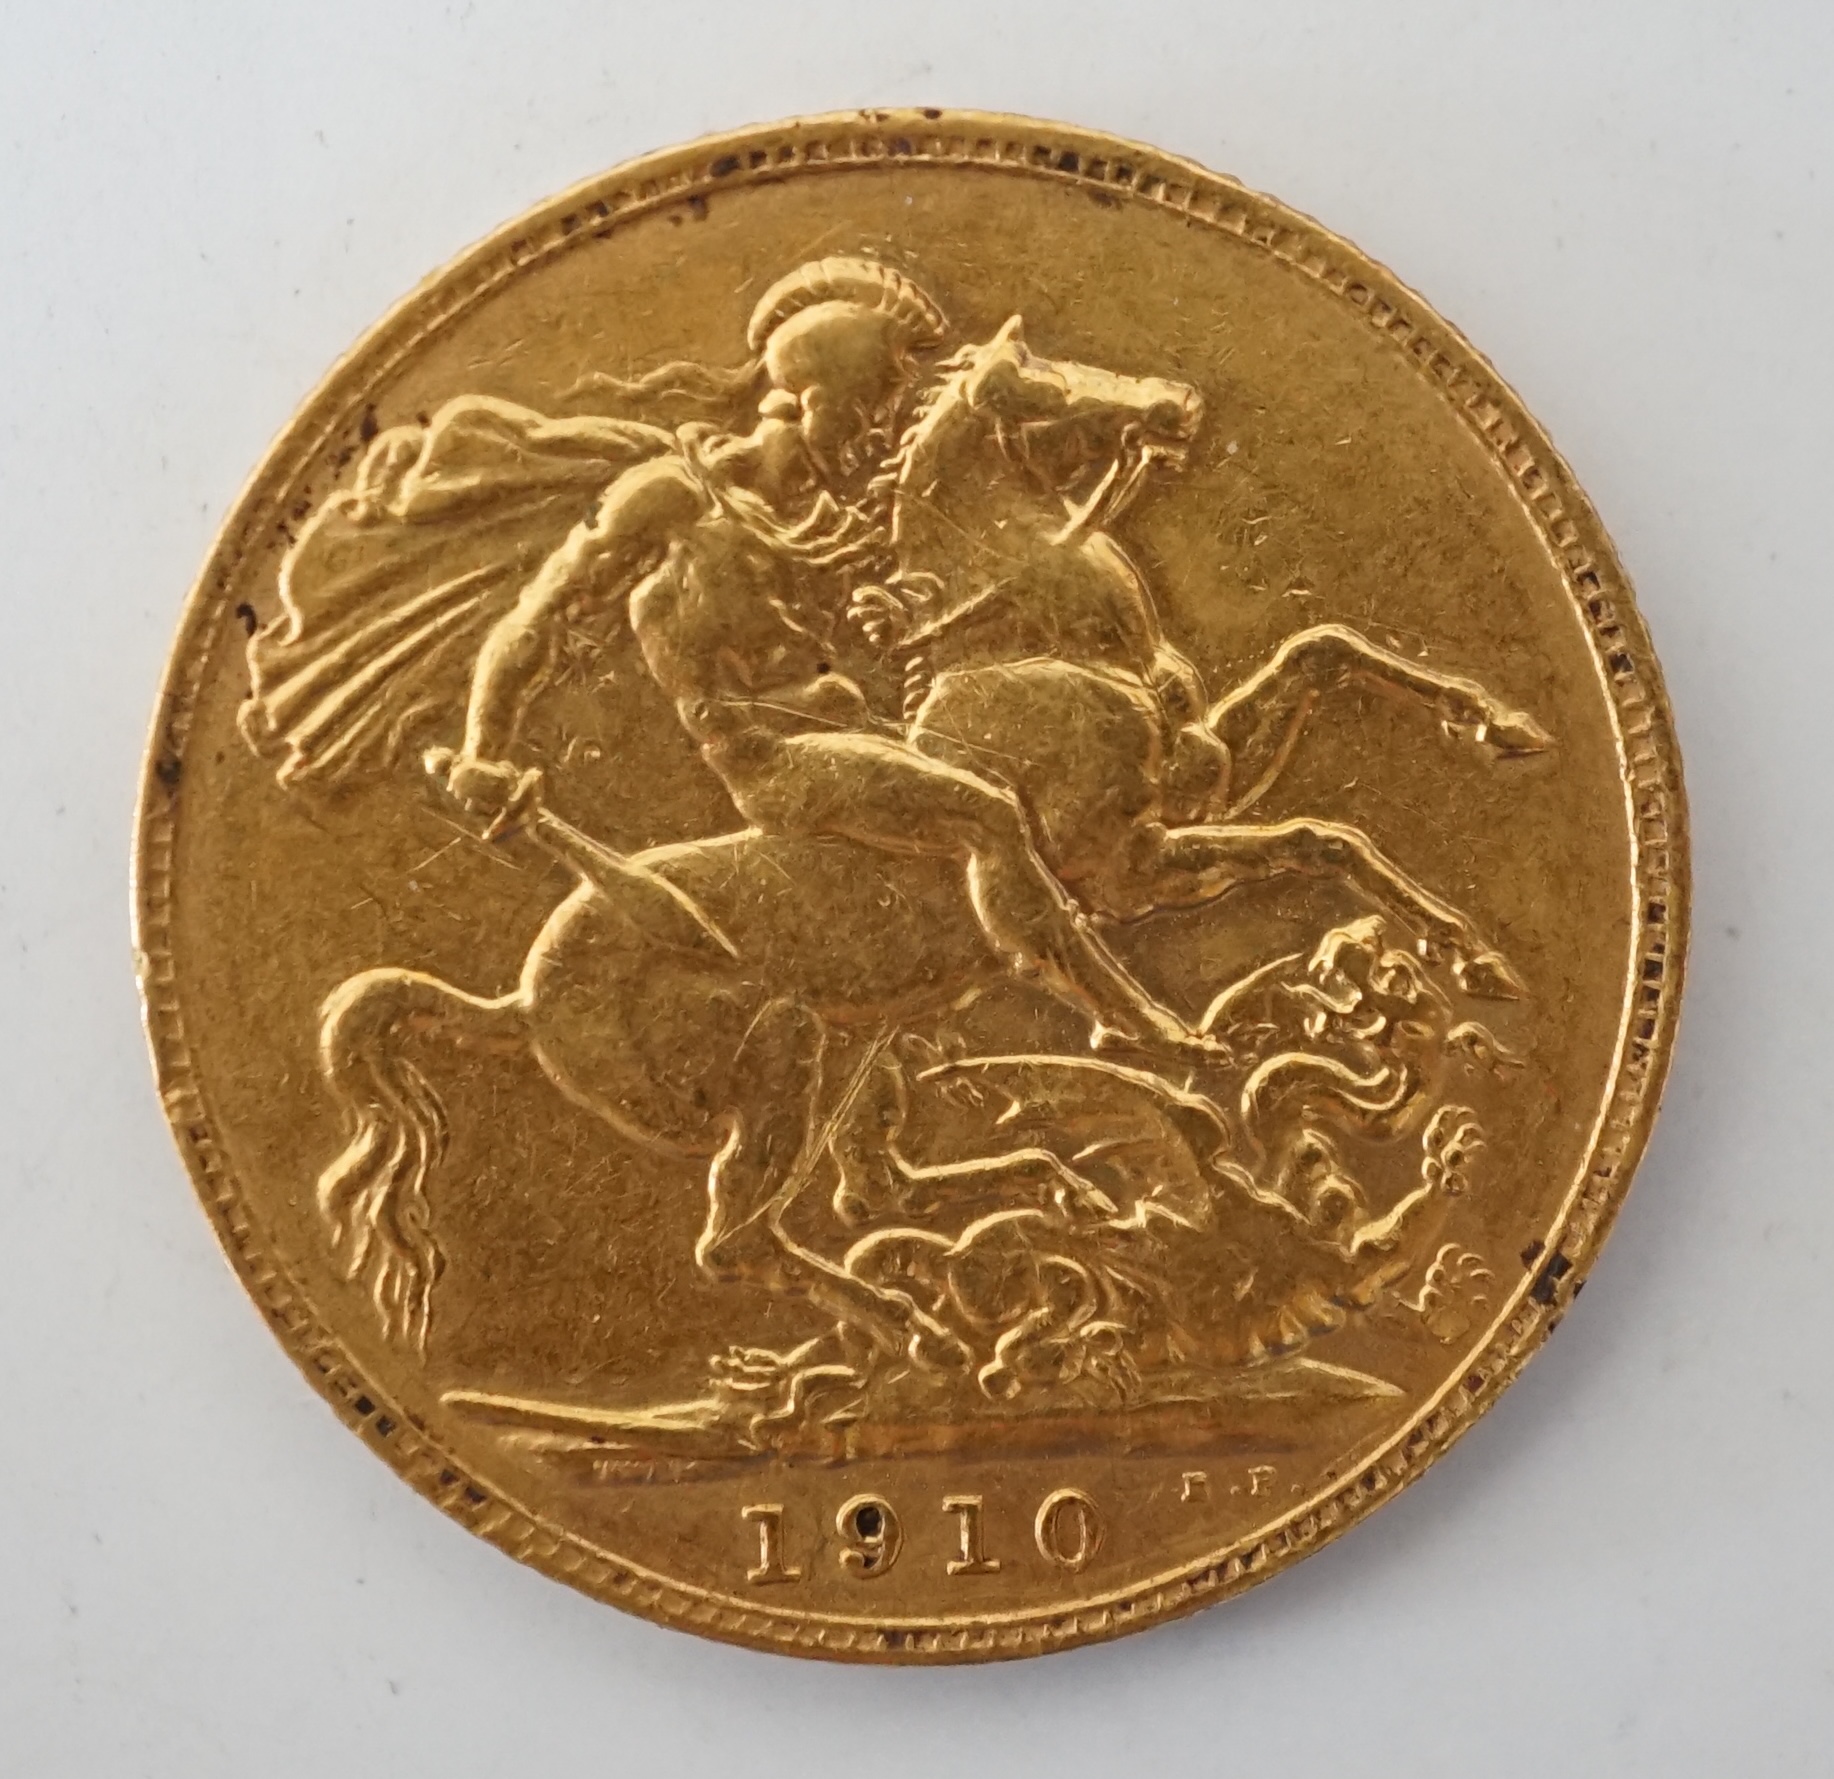 British gold coins, Edward VII sovereign, 1910 (S3969), VF